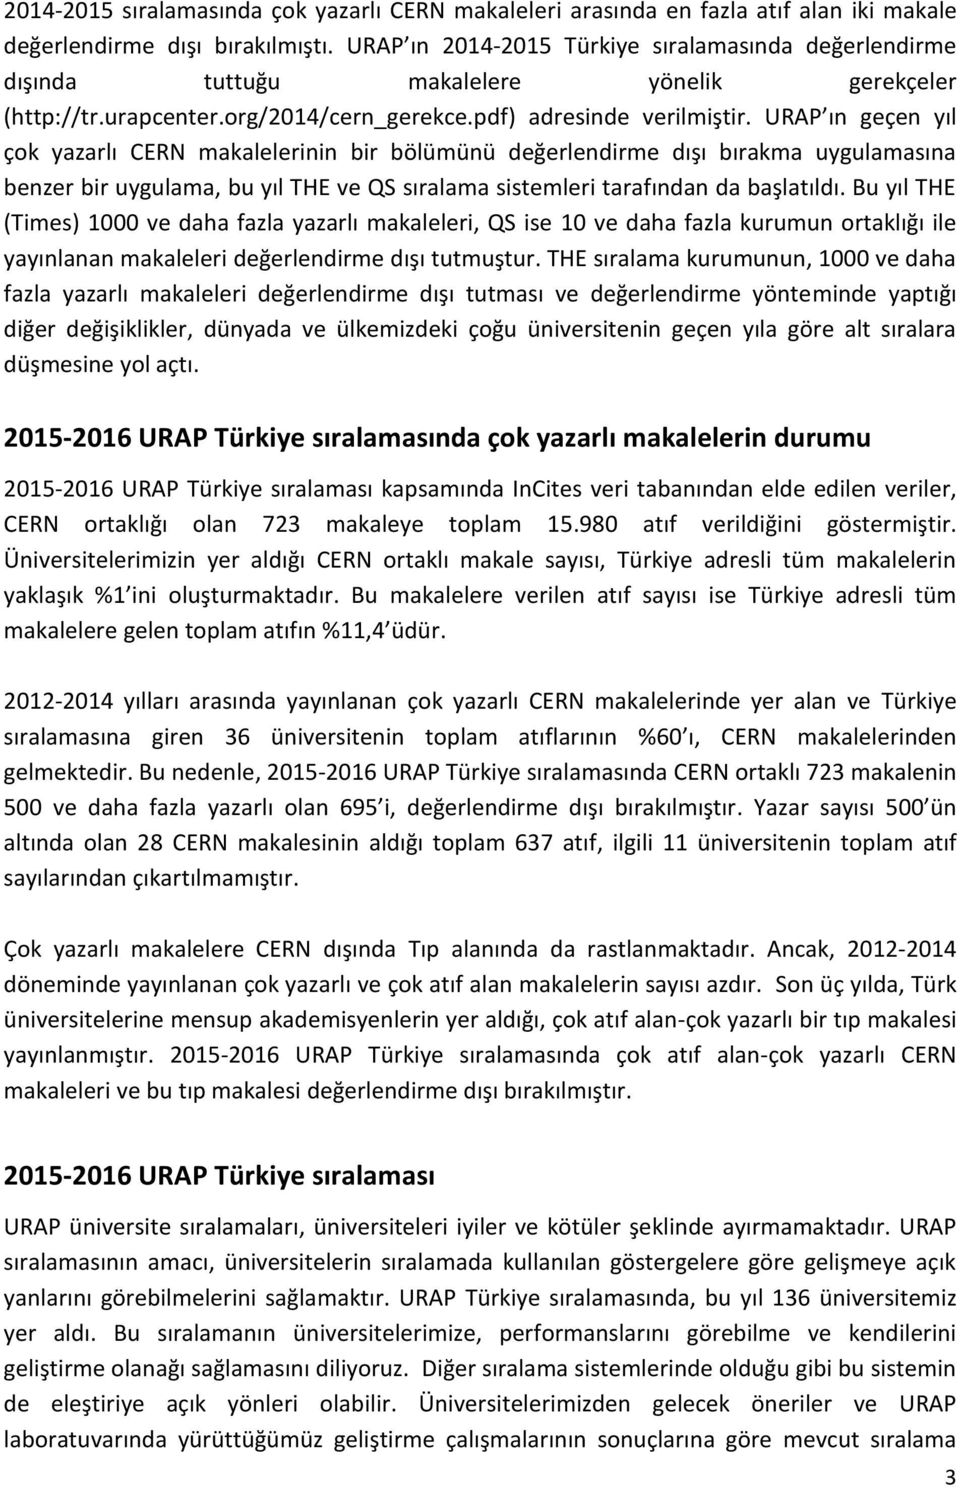 URAP ın geçen yıl çok yazarlı CERN makalelerinin bir bölümünü değerlendirme dışı bırakma uygulamasına benzer bir uygulama, bu yıl THE ve QS sıralama sistemleri tarafından da başlatıldı.